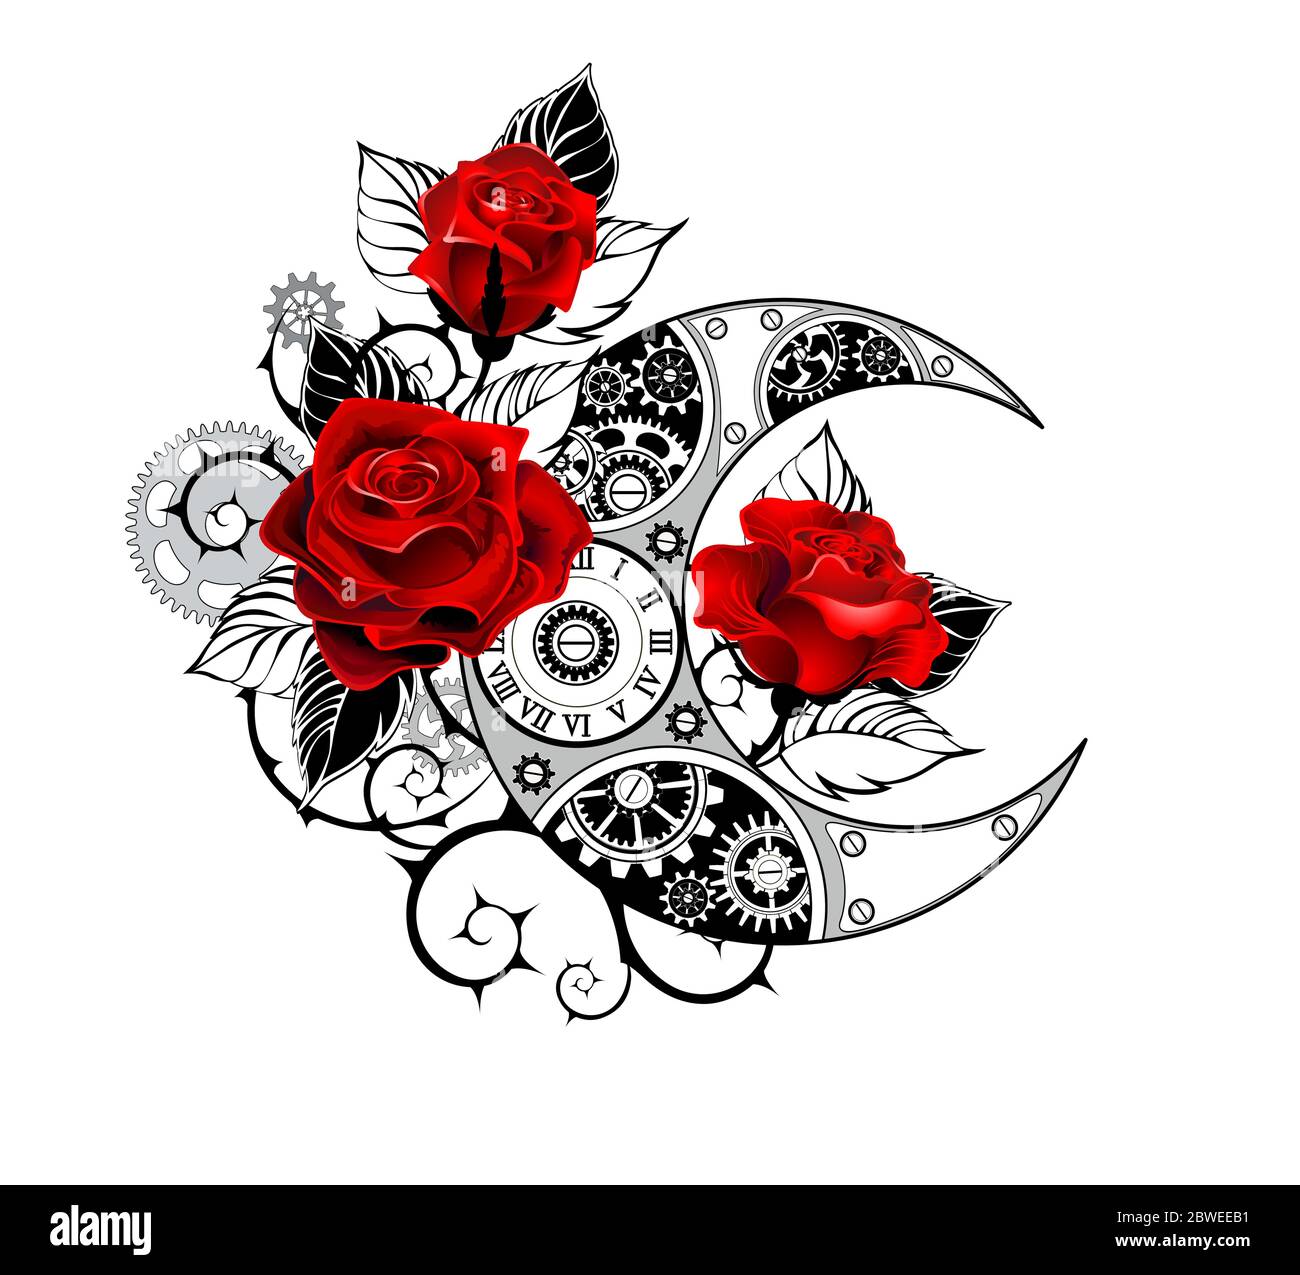 Kontur, mechanischer Halbmond mit Zahnrädern, verziert mit roten Rosen mit schwarzen Stachelstämmen und Blättern auf weißem Hintergrund. Tattoo-Stil. Stock Vektor